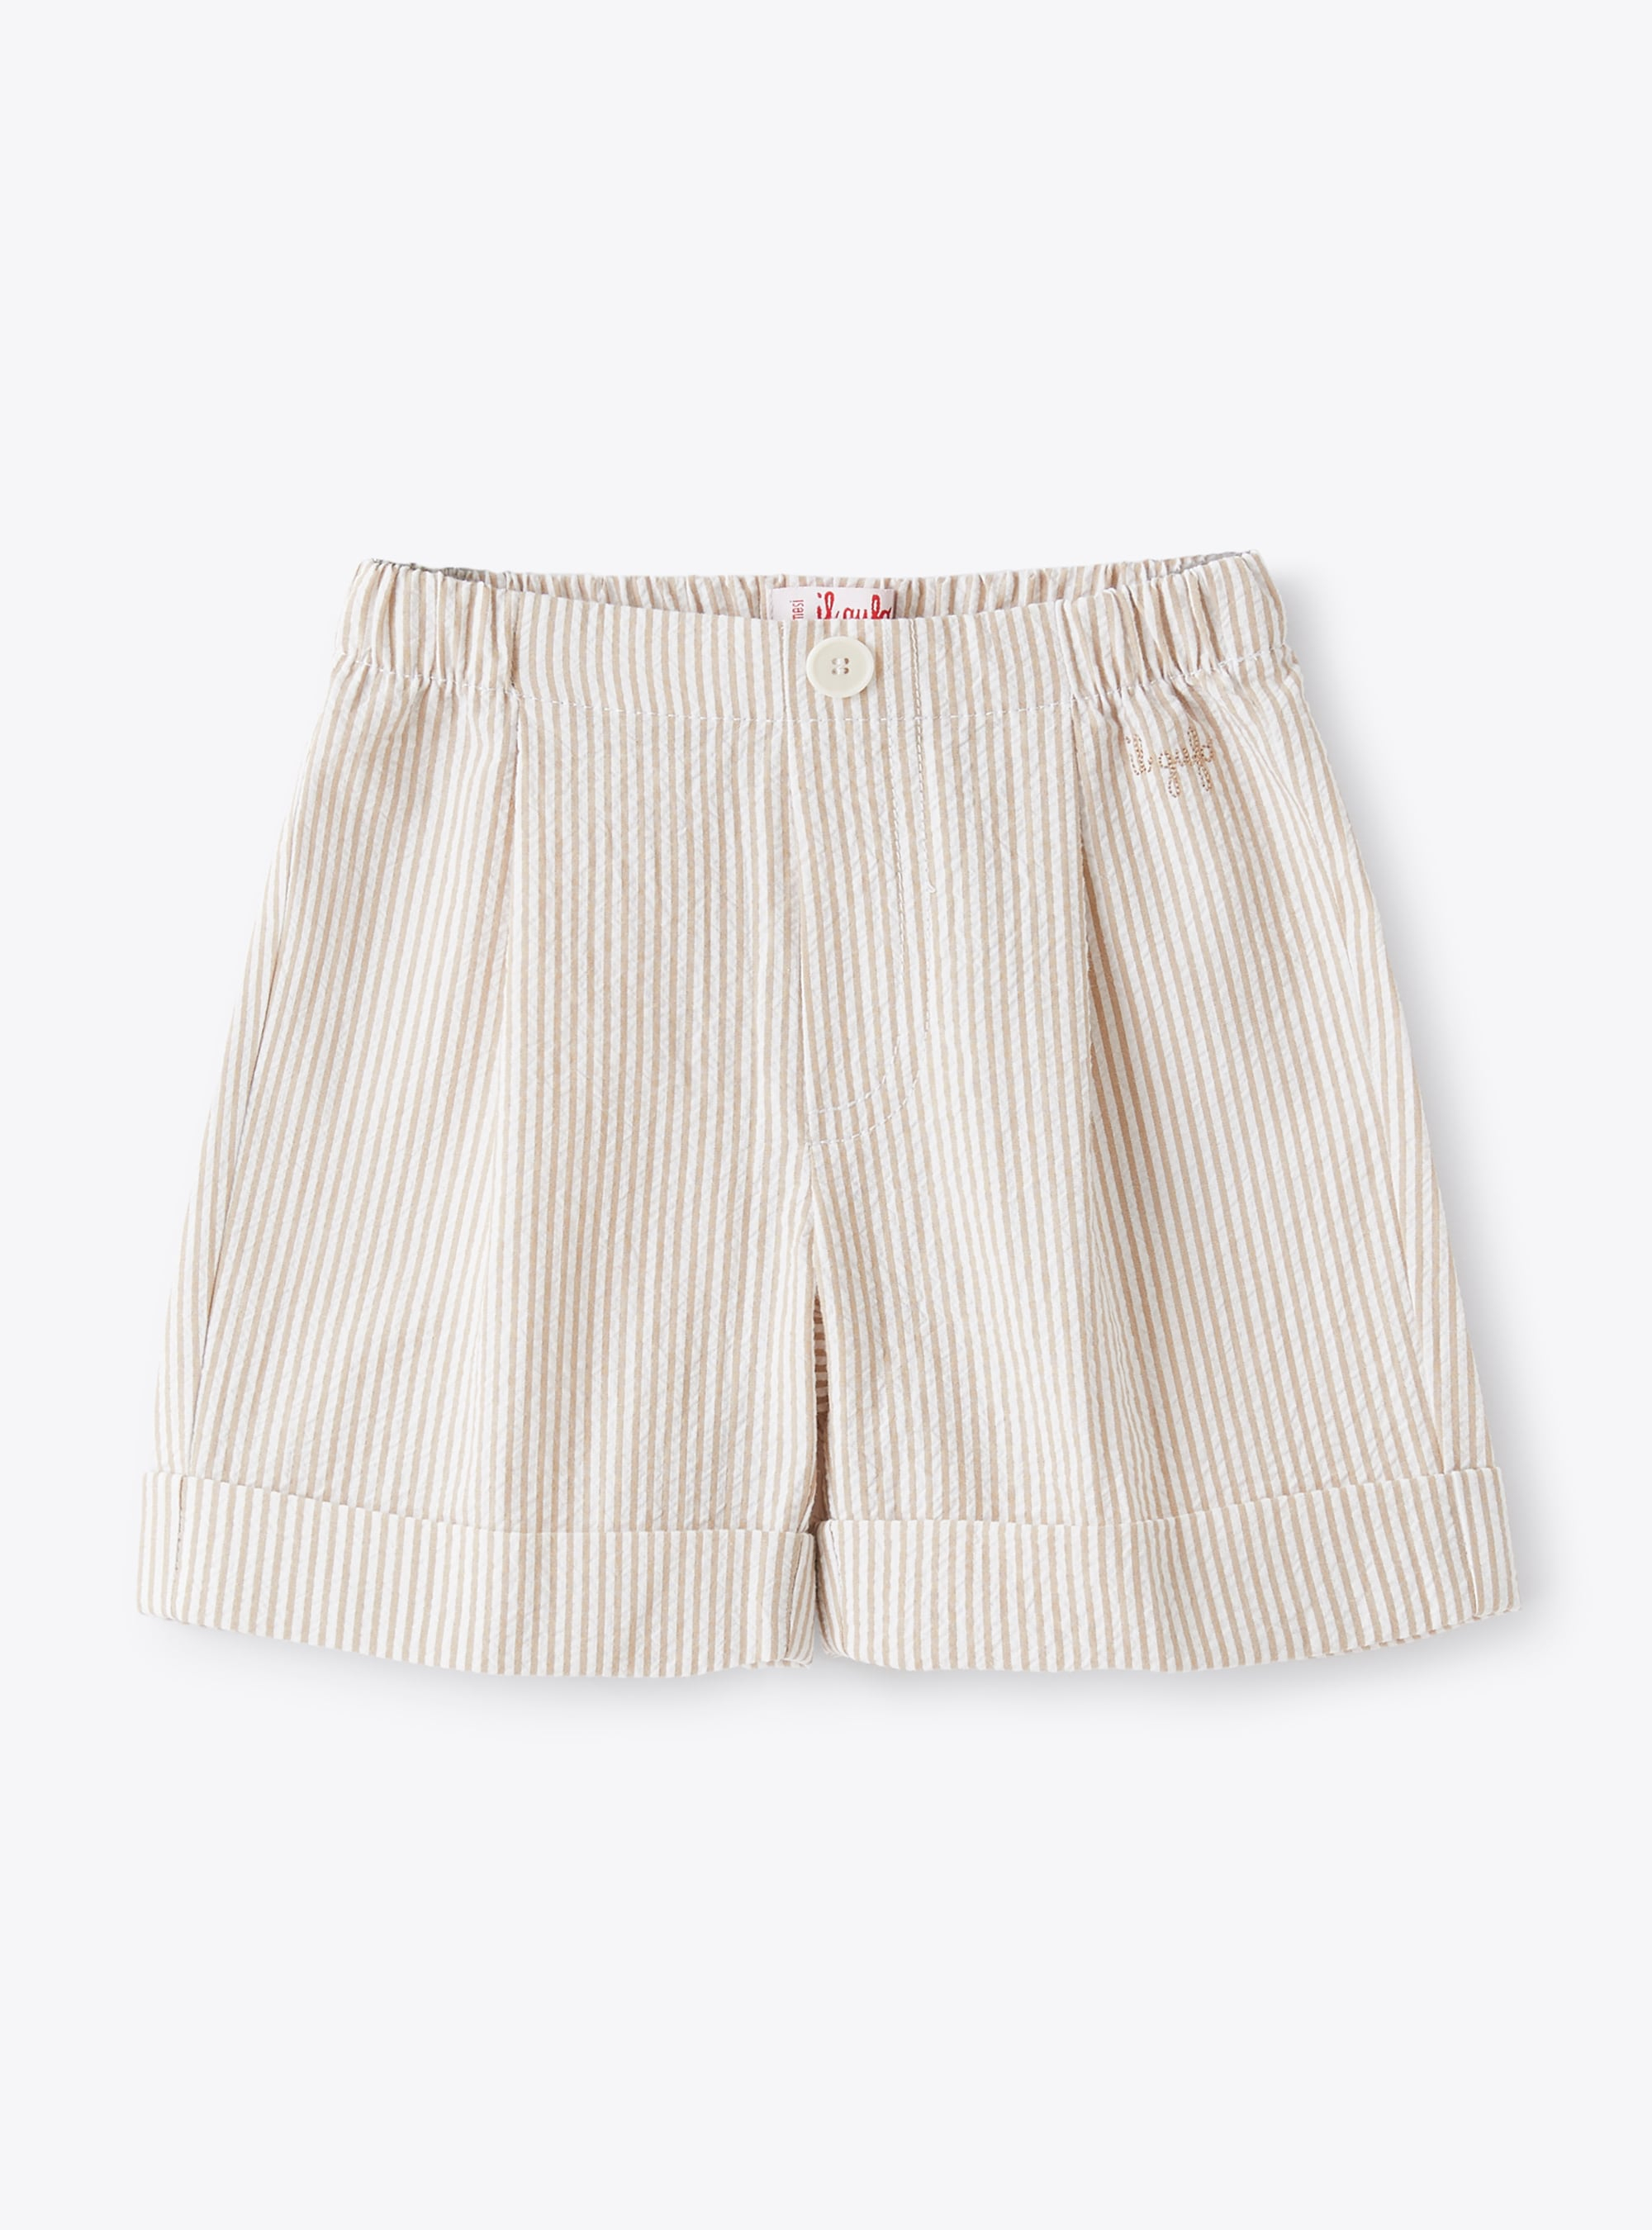 Bermuda shorts in beige seersucker - Trousers - Il Gufo